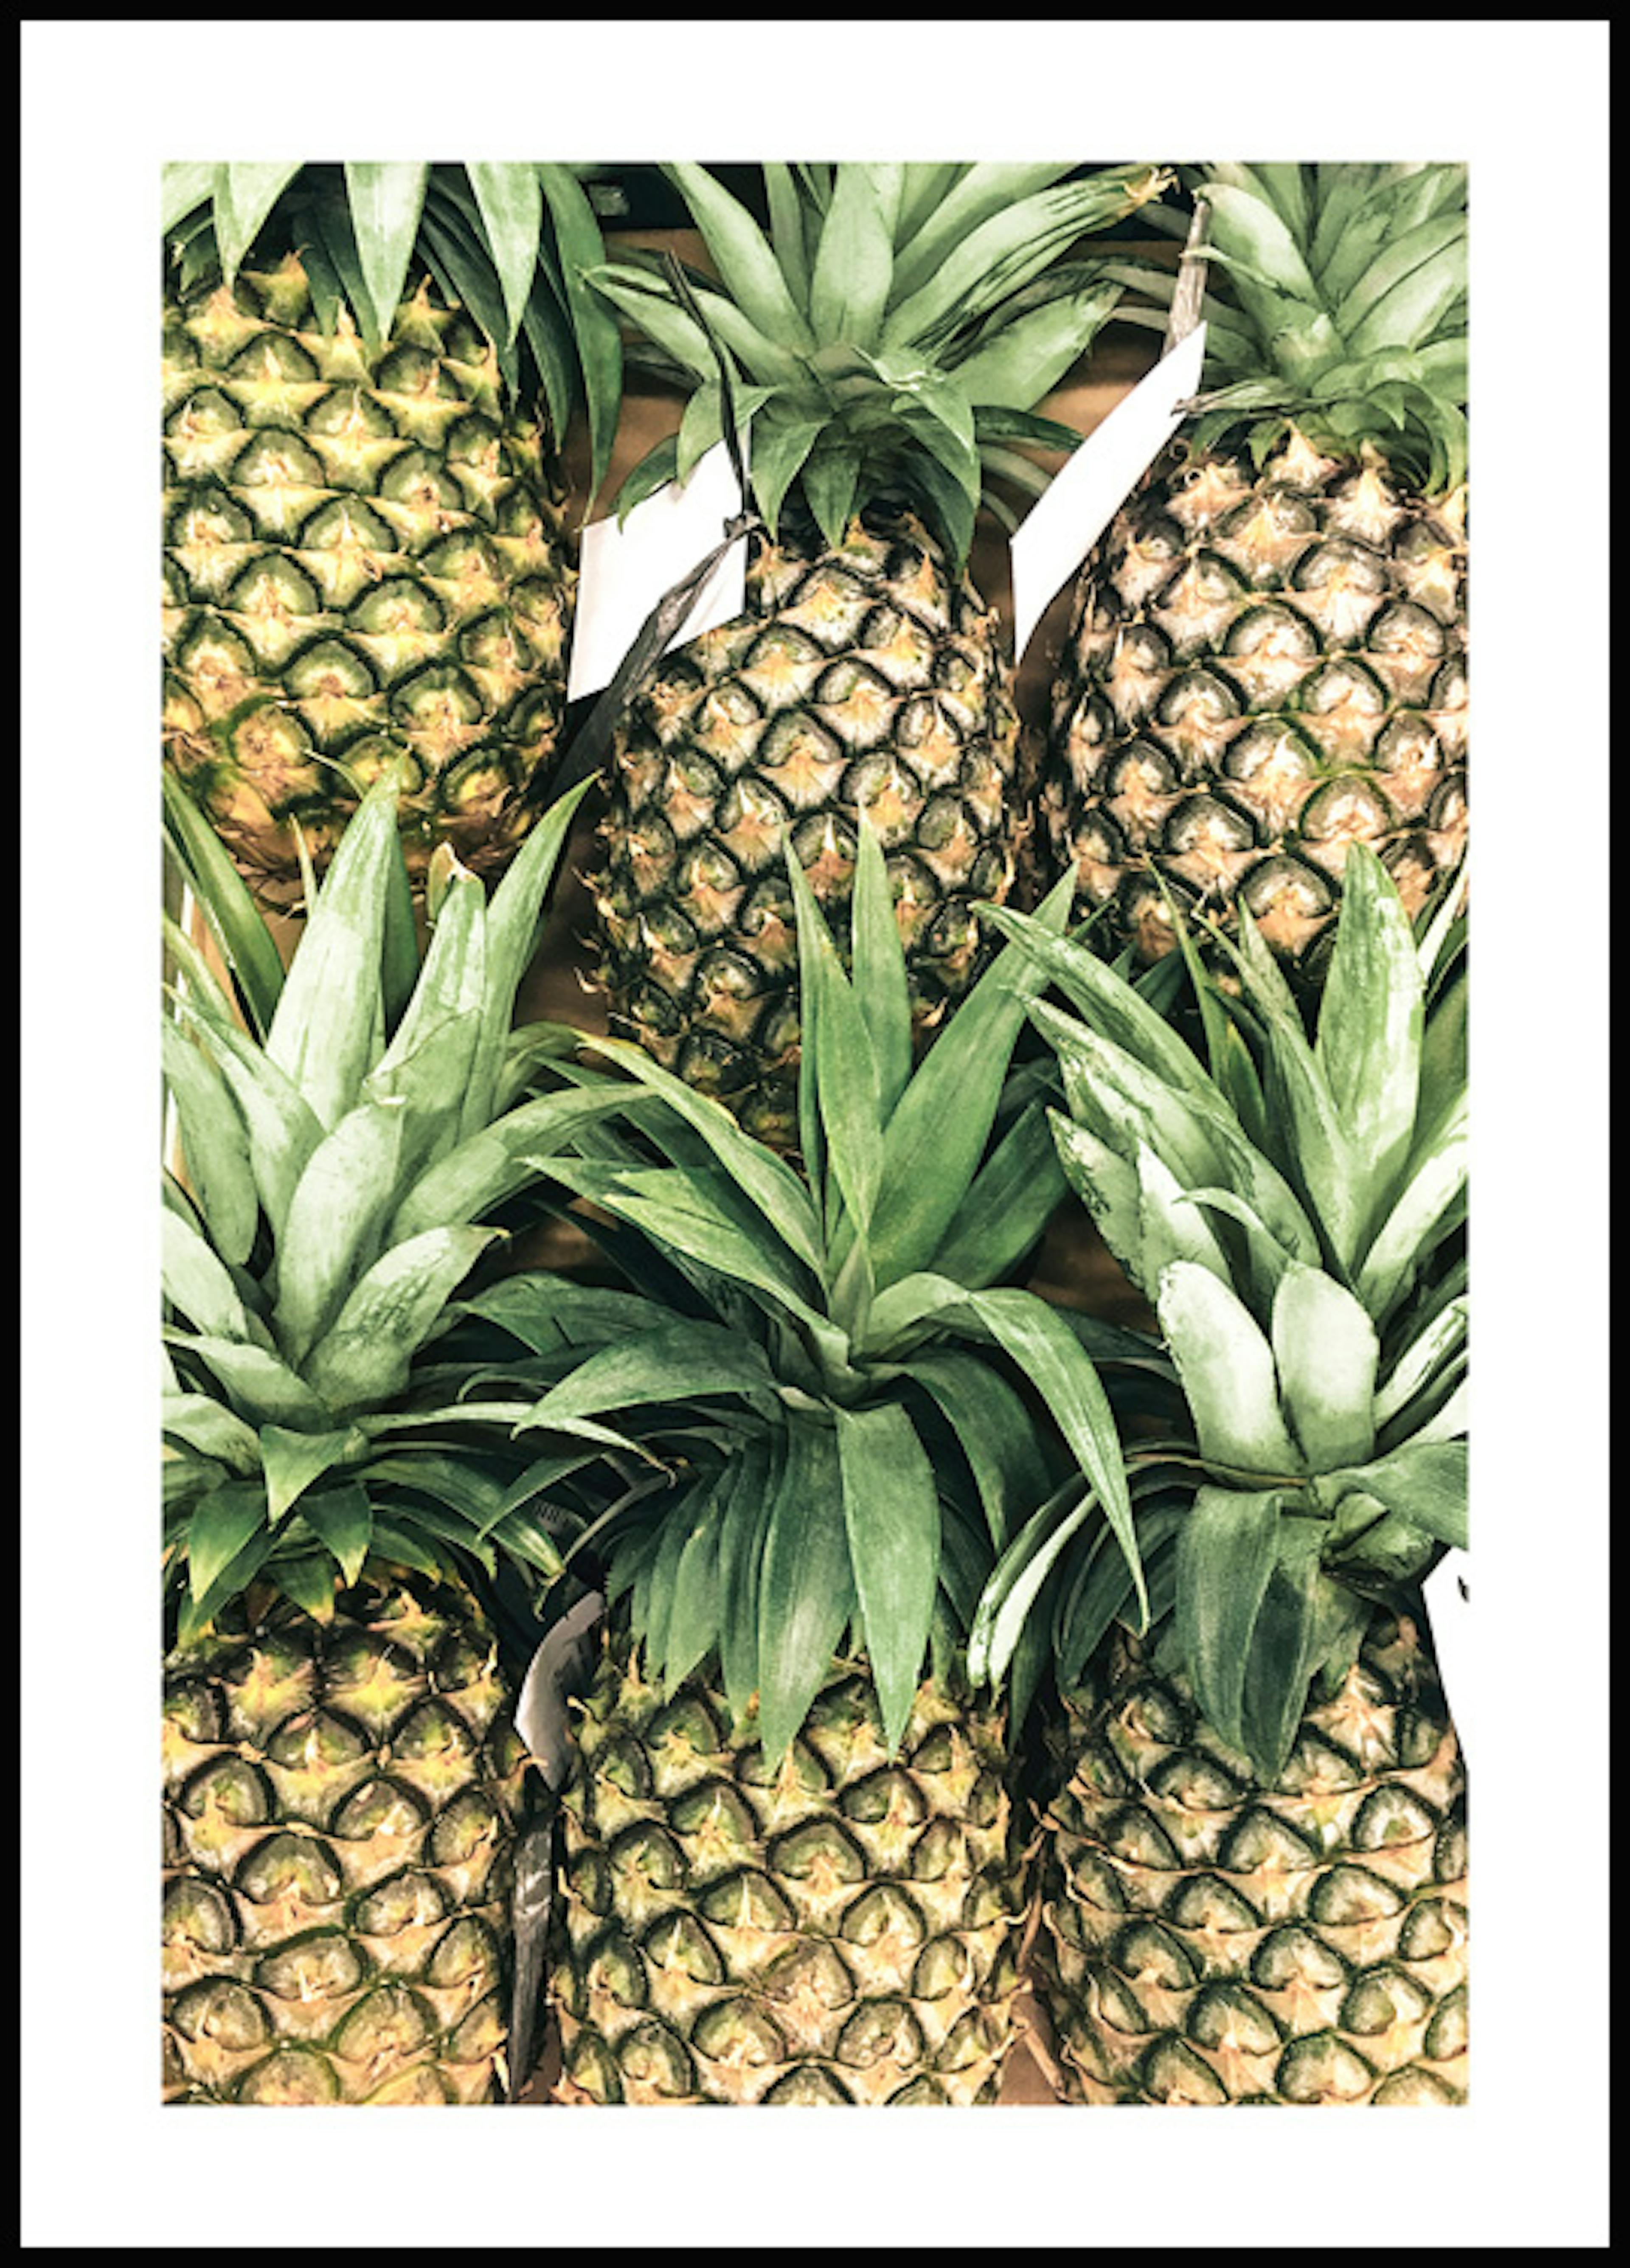 Ananasfrüchte Poster 0